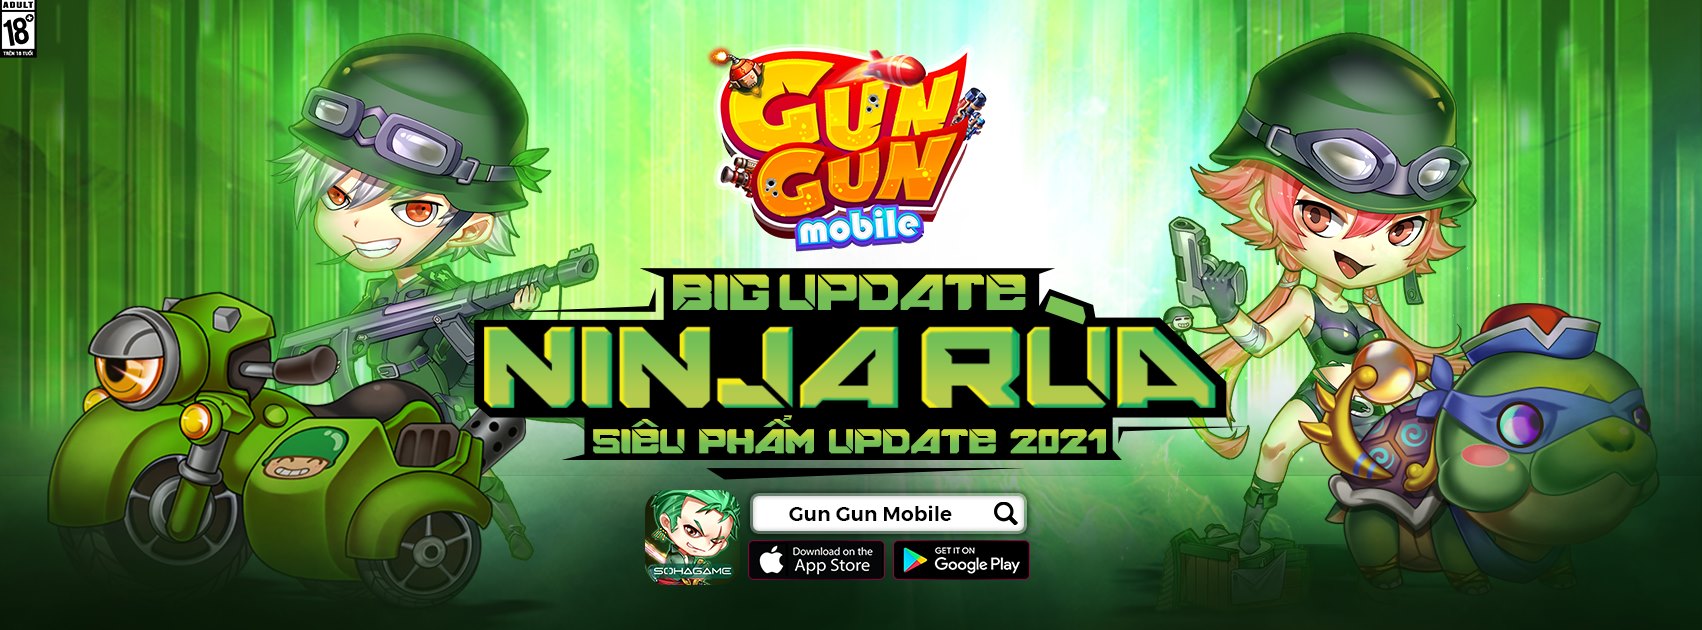 Gun Gun Mobile công bố landing đặc biệt mừng Big Update, tiếp tục phát lương cho game thủ toàn server - Ảnh 1.